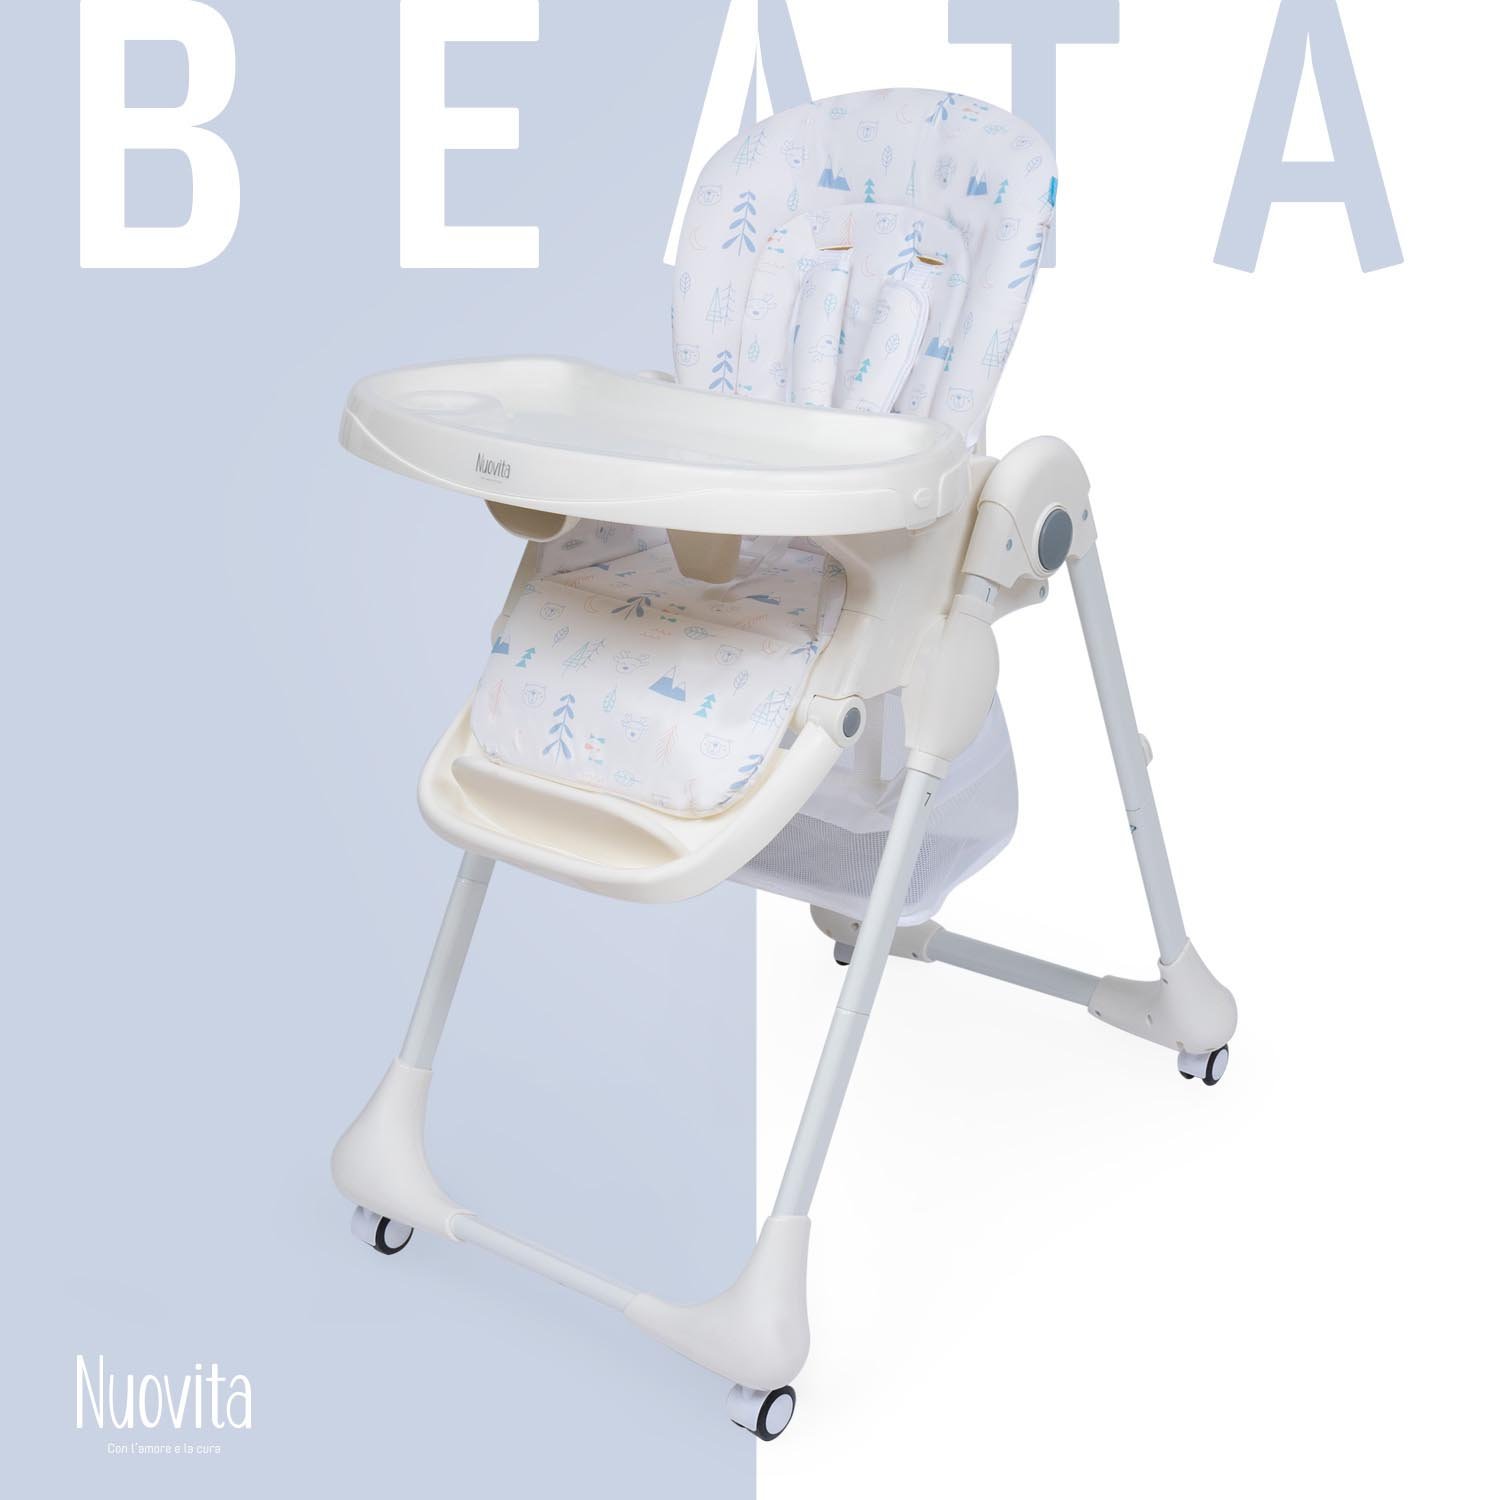 Стульчик для кормления Nuovita Beata (Riserva / Заповедник) стульчик для кормления nuovita beata